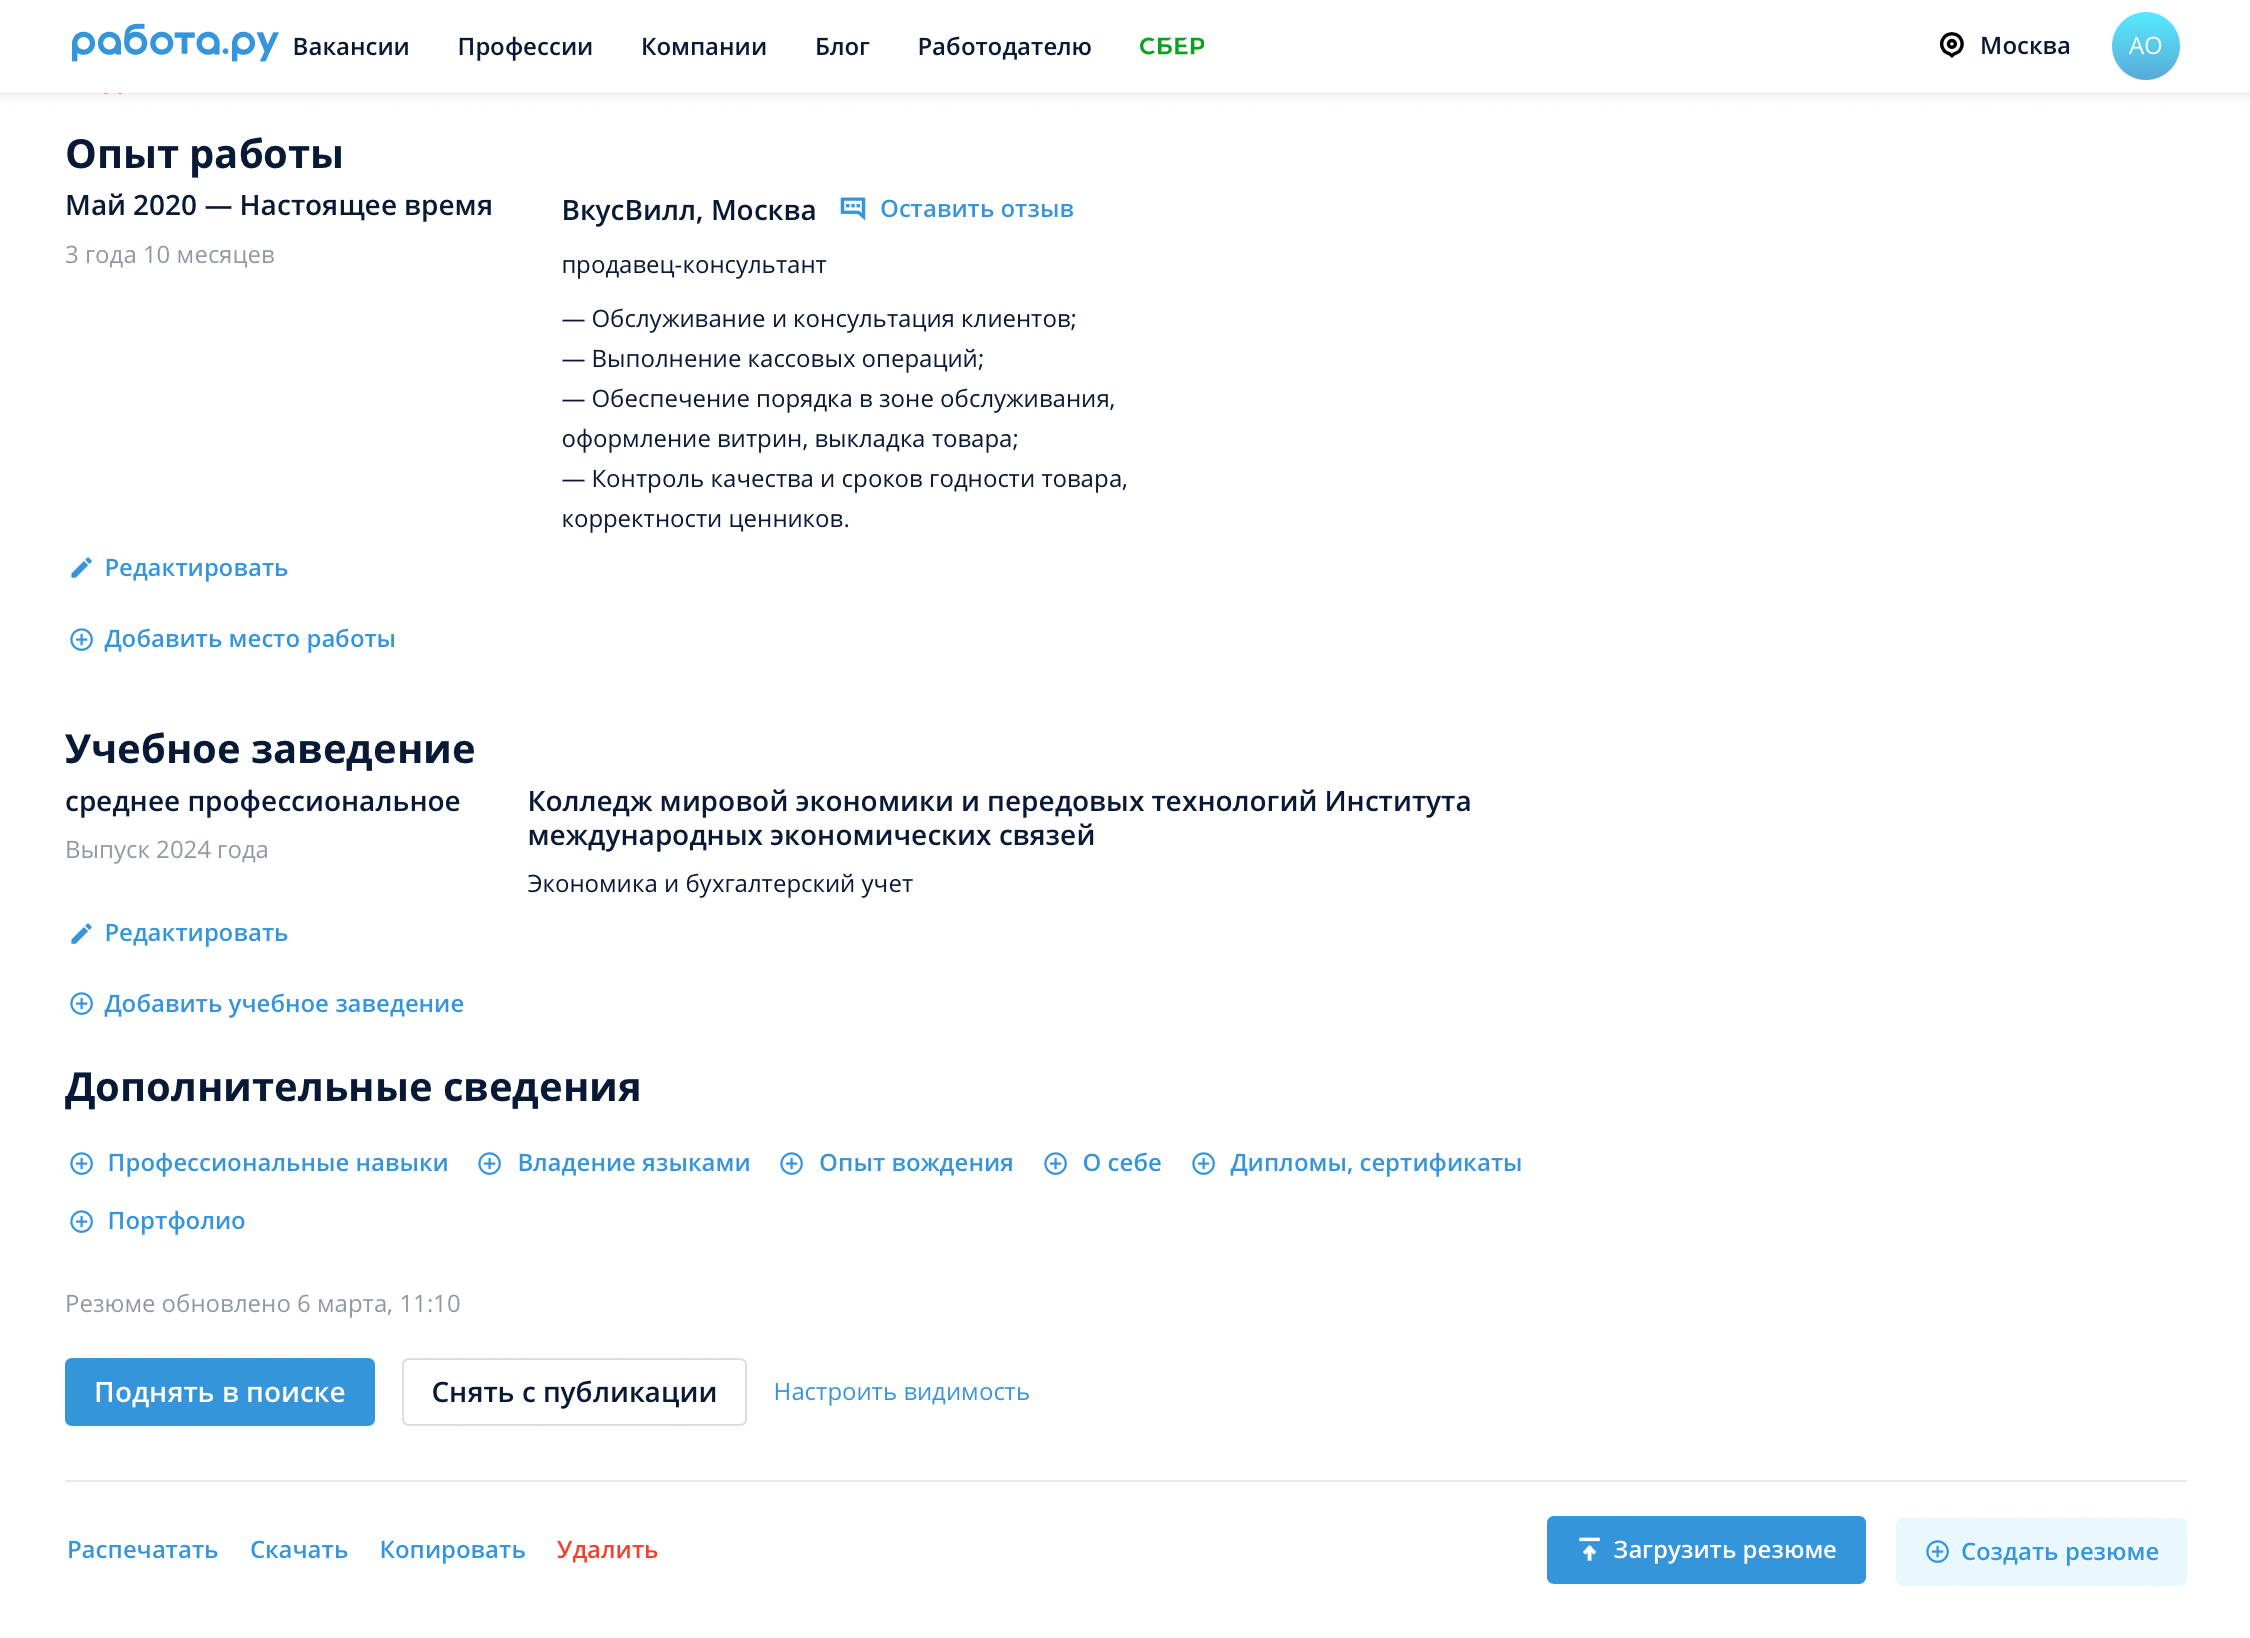 Инструкция, как удалить резюме на «Работа‑ру». Источник: rabota.ru